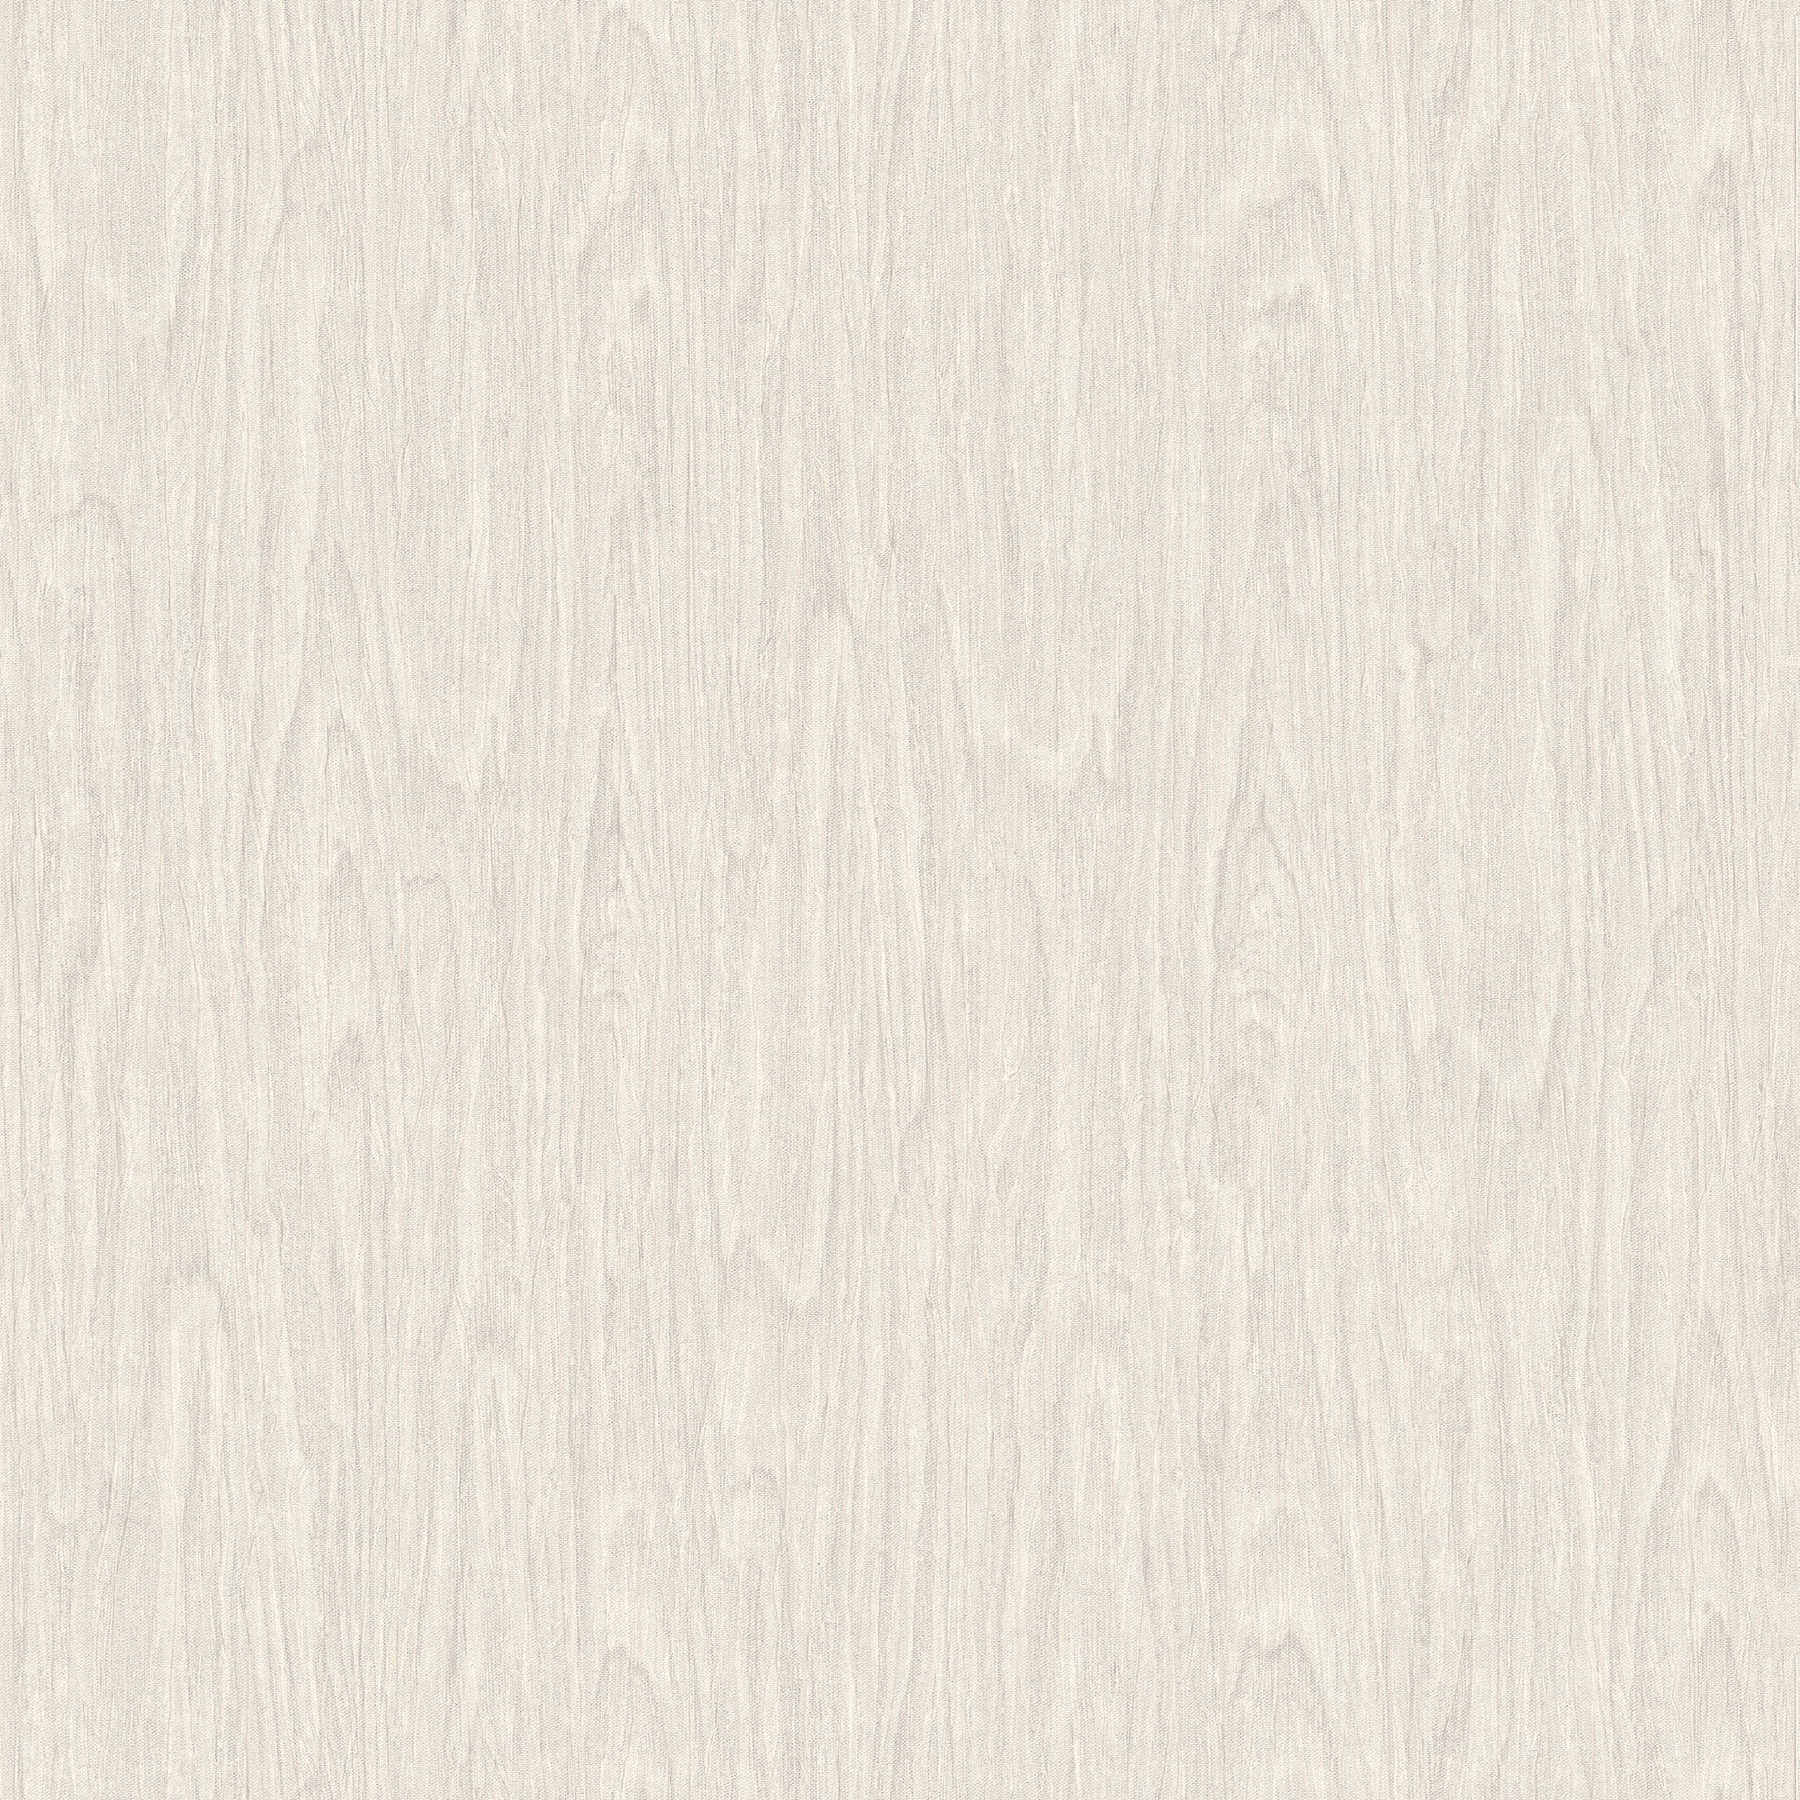 VERSACE Home Carta da parati effetto legno realistico - beige, crema, bianco
